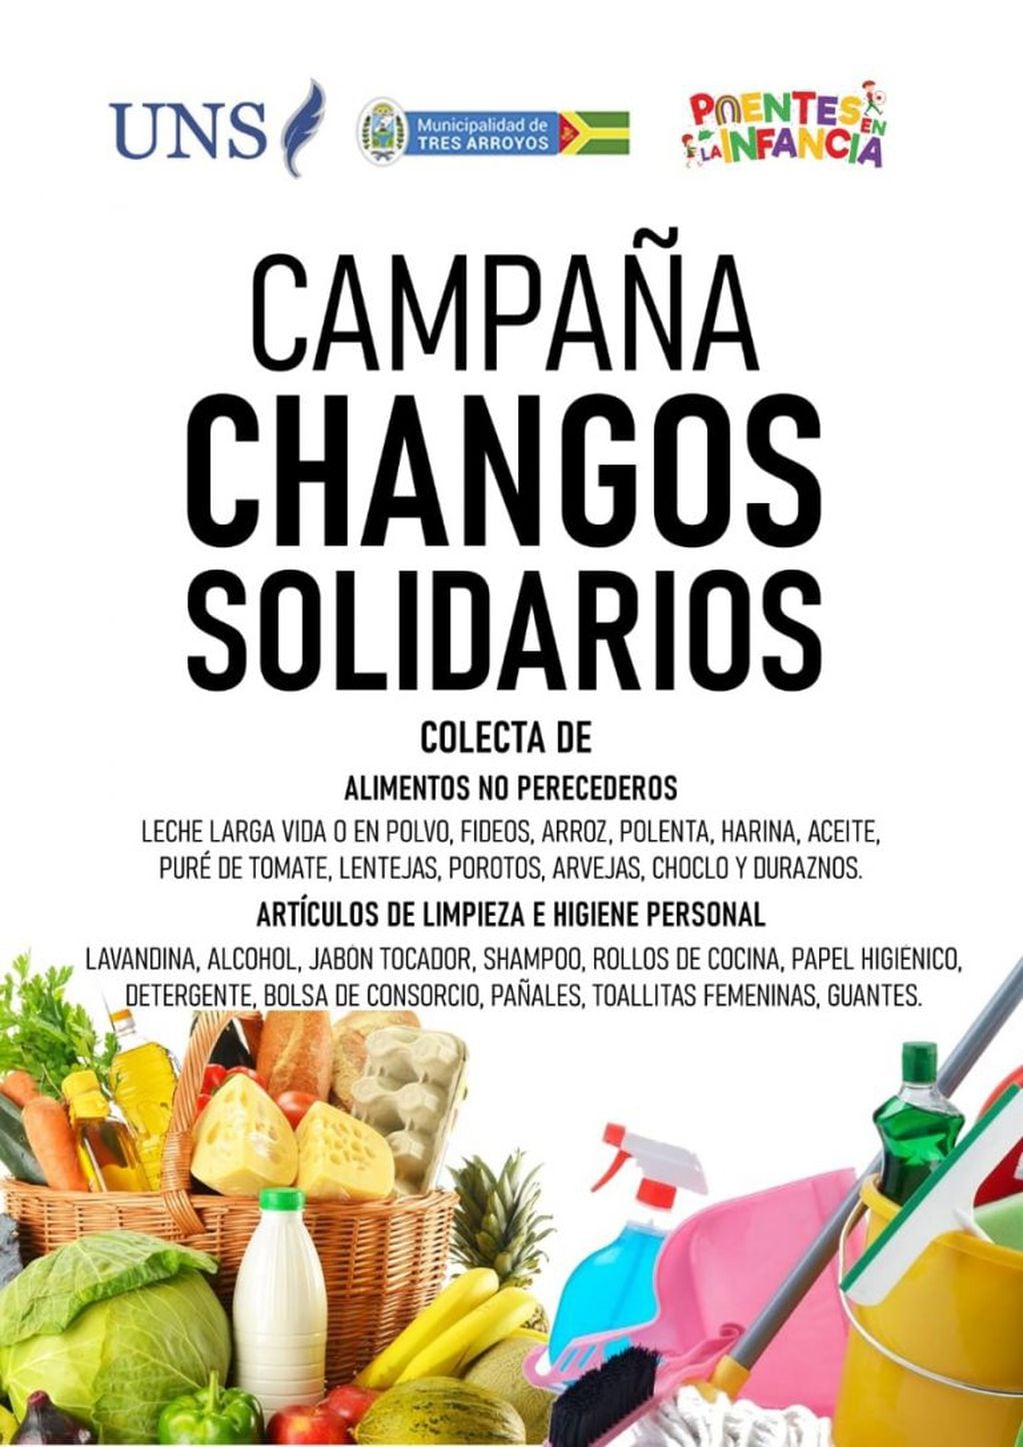 Campaña "Changos solidarios"